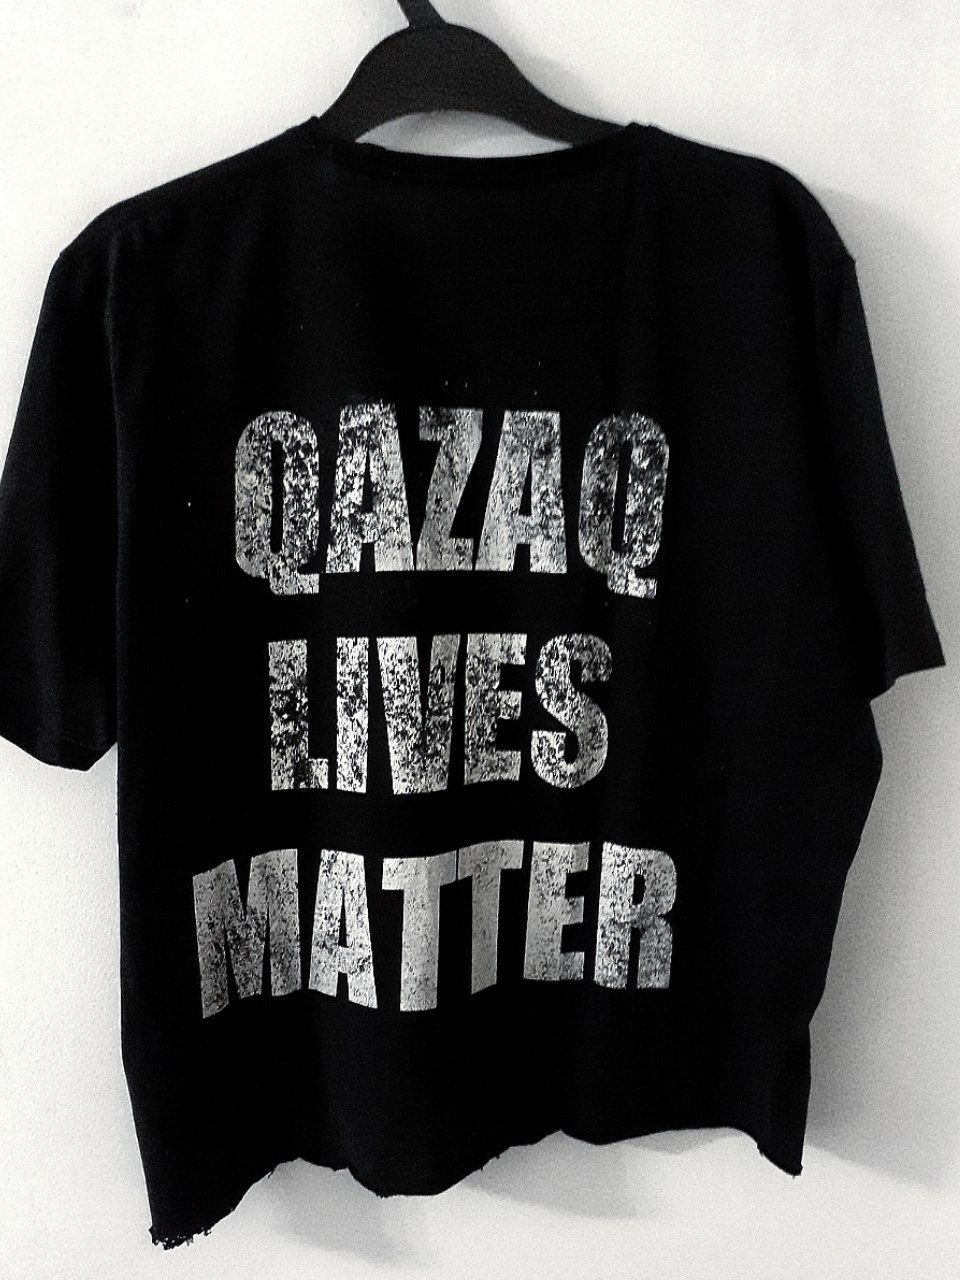 qazaq lives matter tshirt